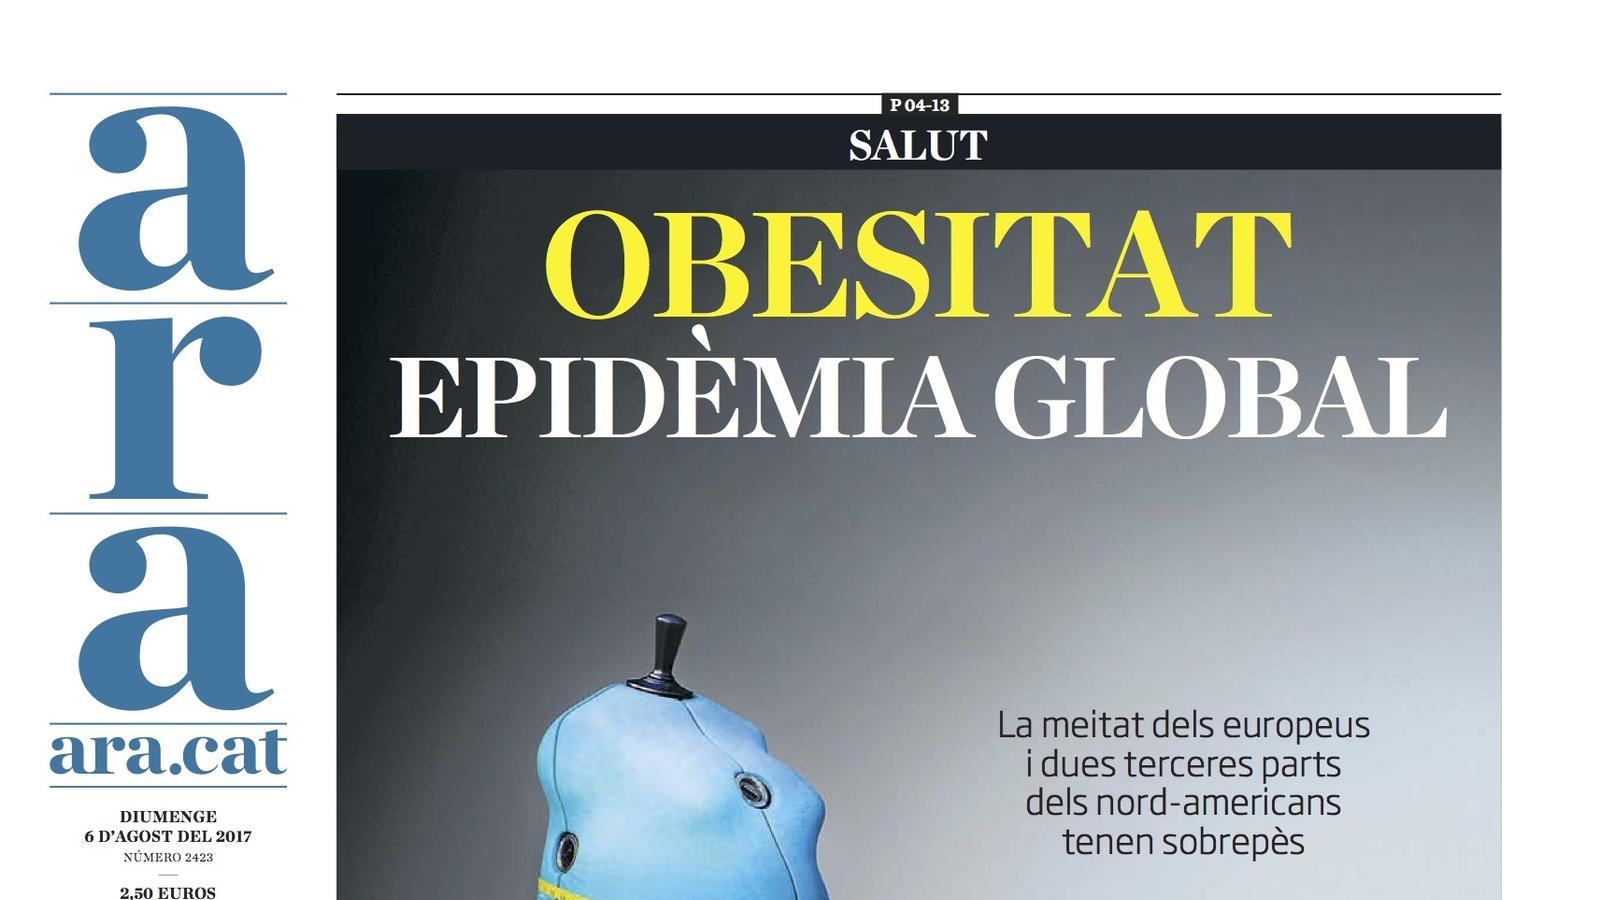 "Obesitat, epidèmia global", portada de l'ARA